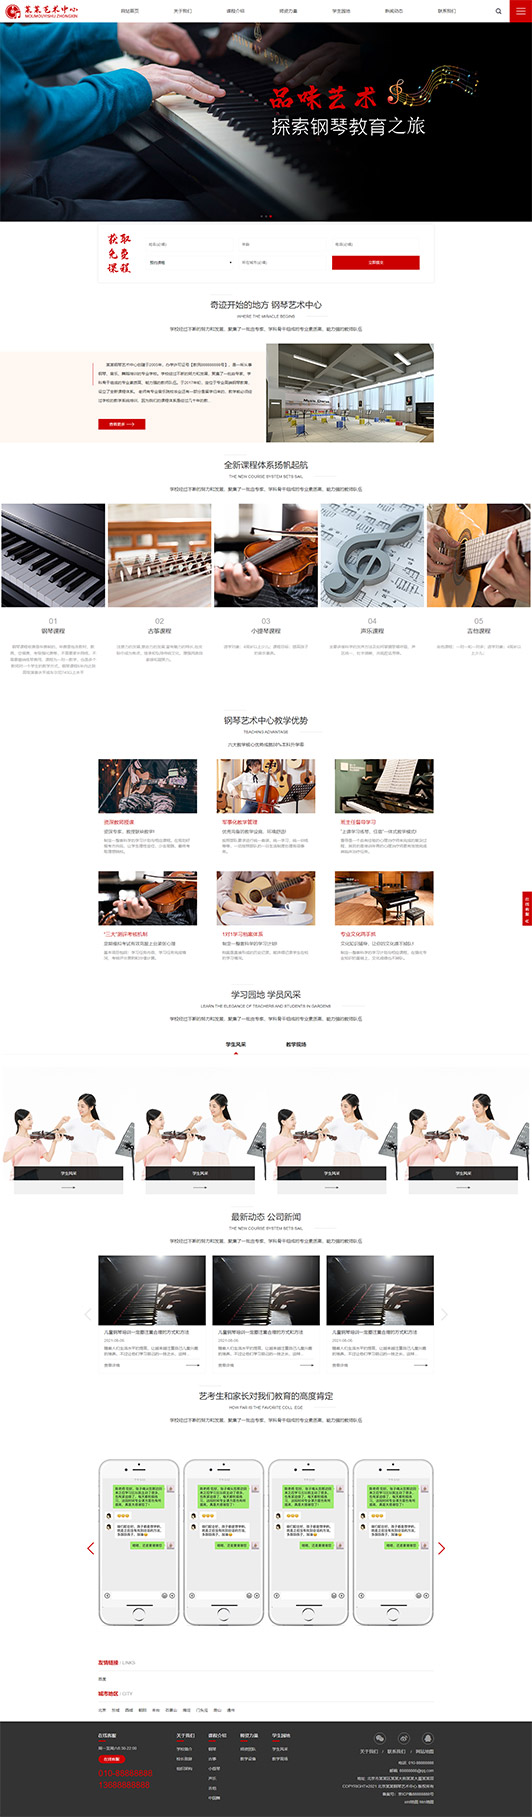 南通钢琴艺术培训公司响应式企业网站